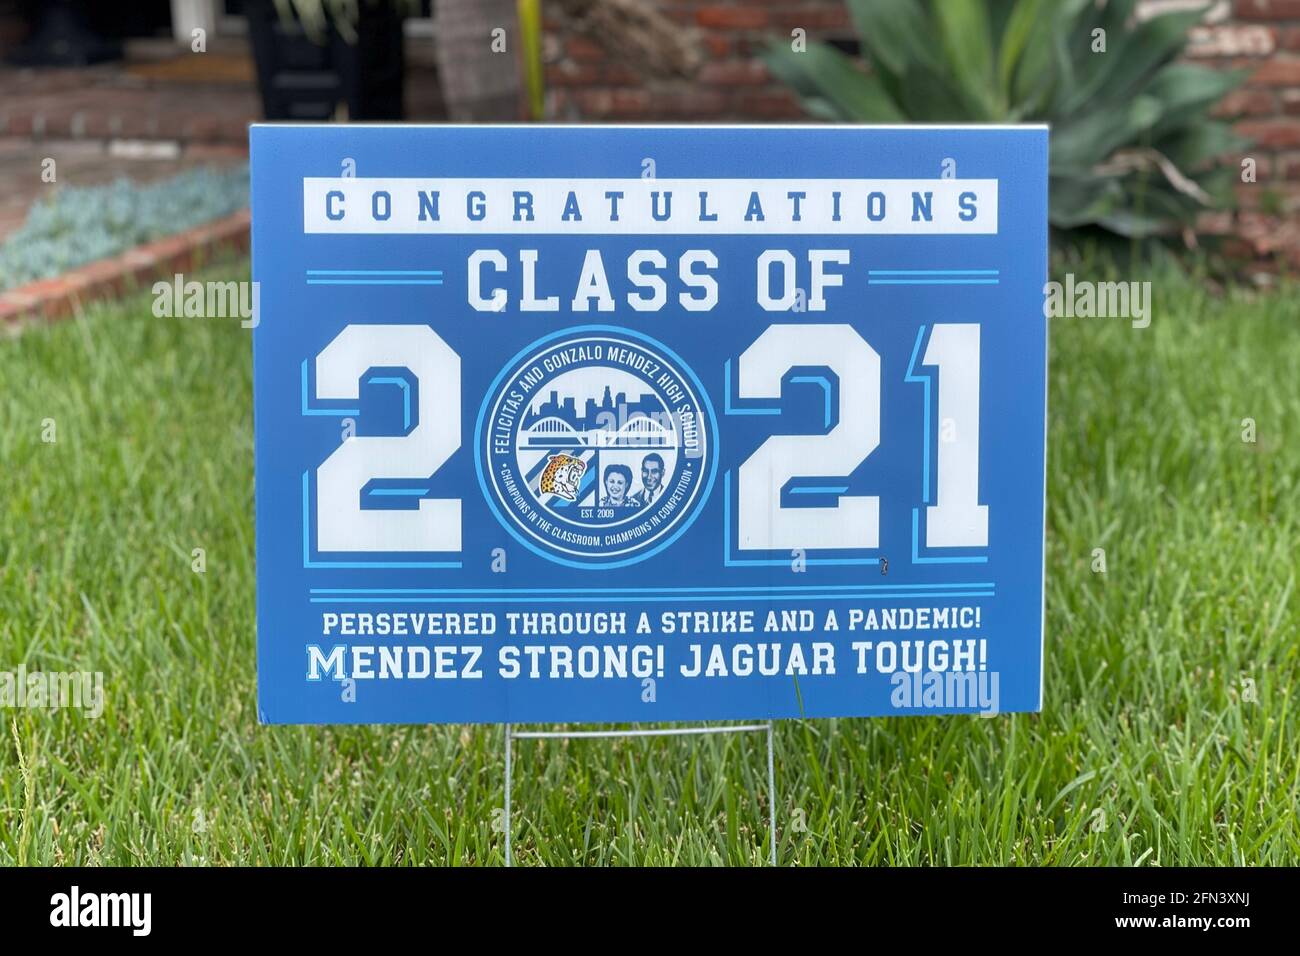 Ein Mendez-Gymnasium mit 2021 Schulklassen Herzlichen Glückwunsch in einer Residenz am Donnerstag, den 13. Mai 2021, in Montebello, Kalif. Stockfoto